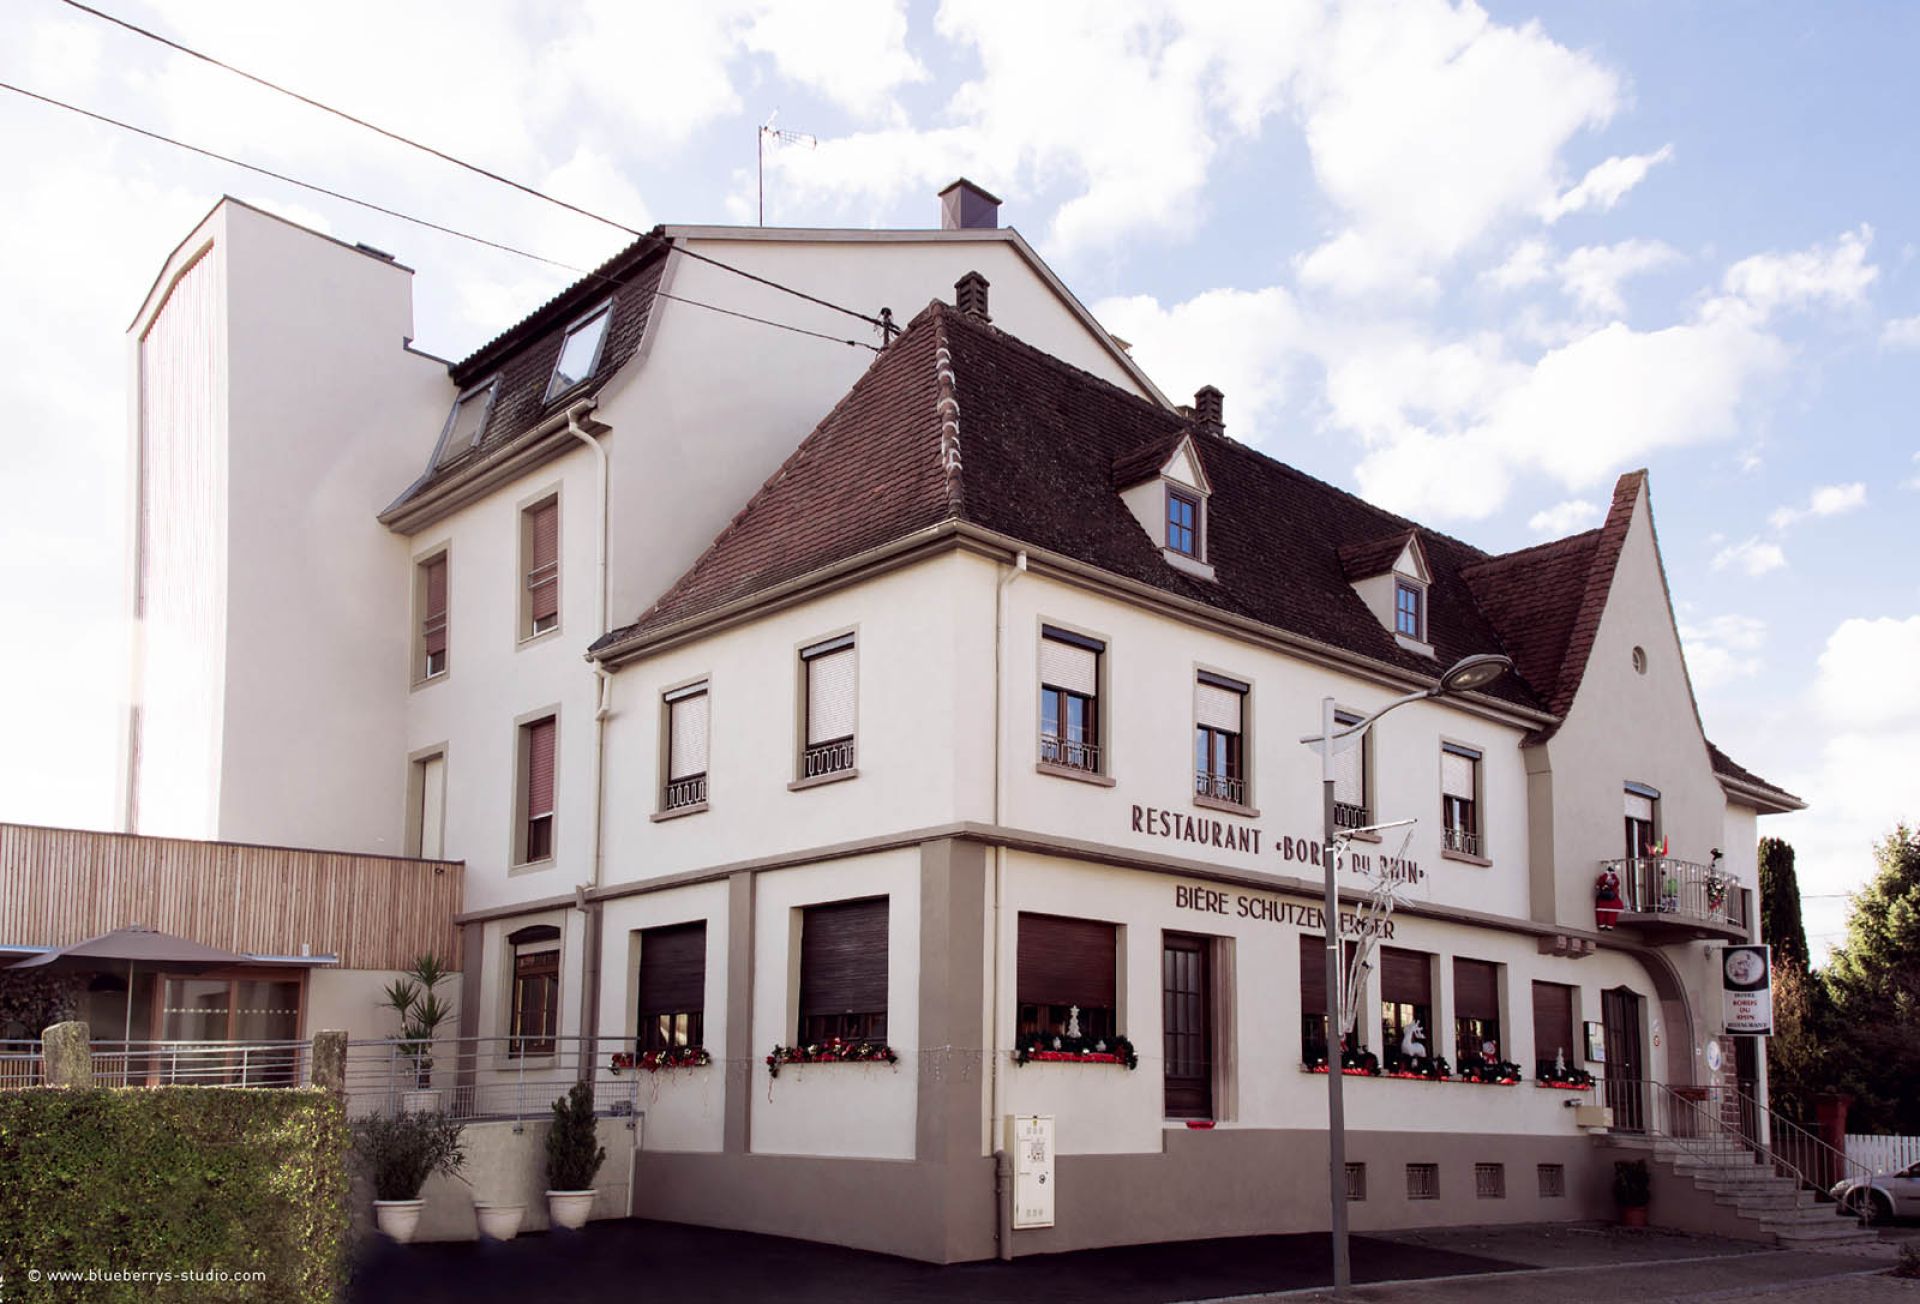 Hôtel-restaurant Aux Bords du Rhin à Rhinau, frontière allemande, proche europapark et rulantica